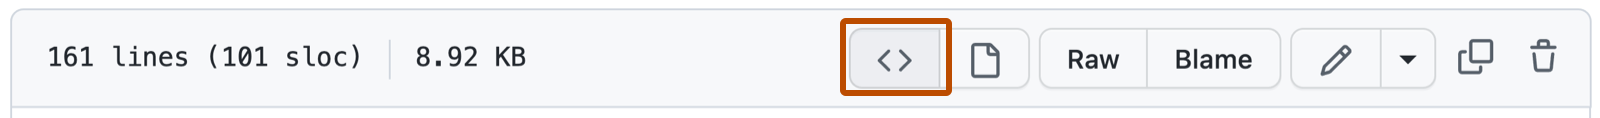 Captura de tela de um arquivo Markdown em um repositório do GitHub mostrando as opções para interagir com o arquivo. Há um botão para exibir o blob de origem com um contorno em laranja escuro.